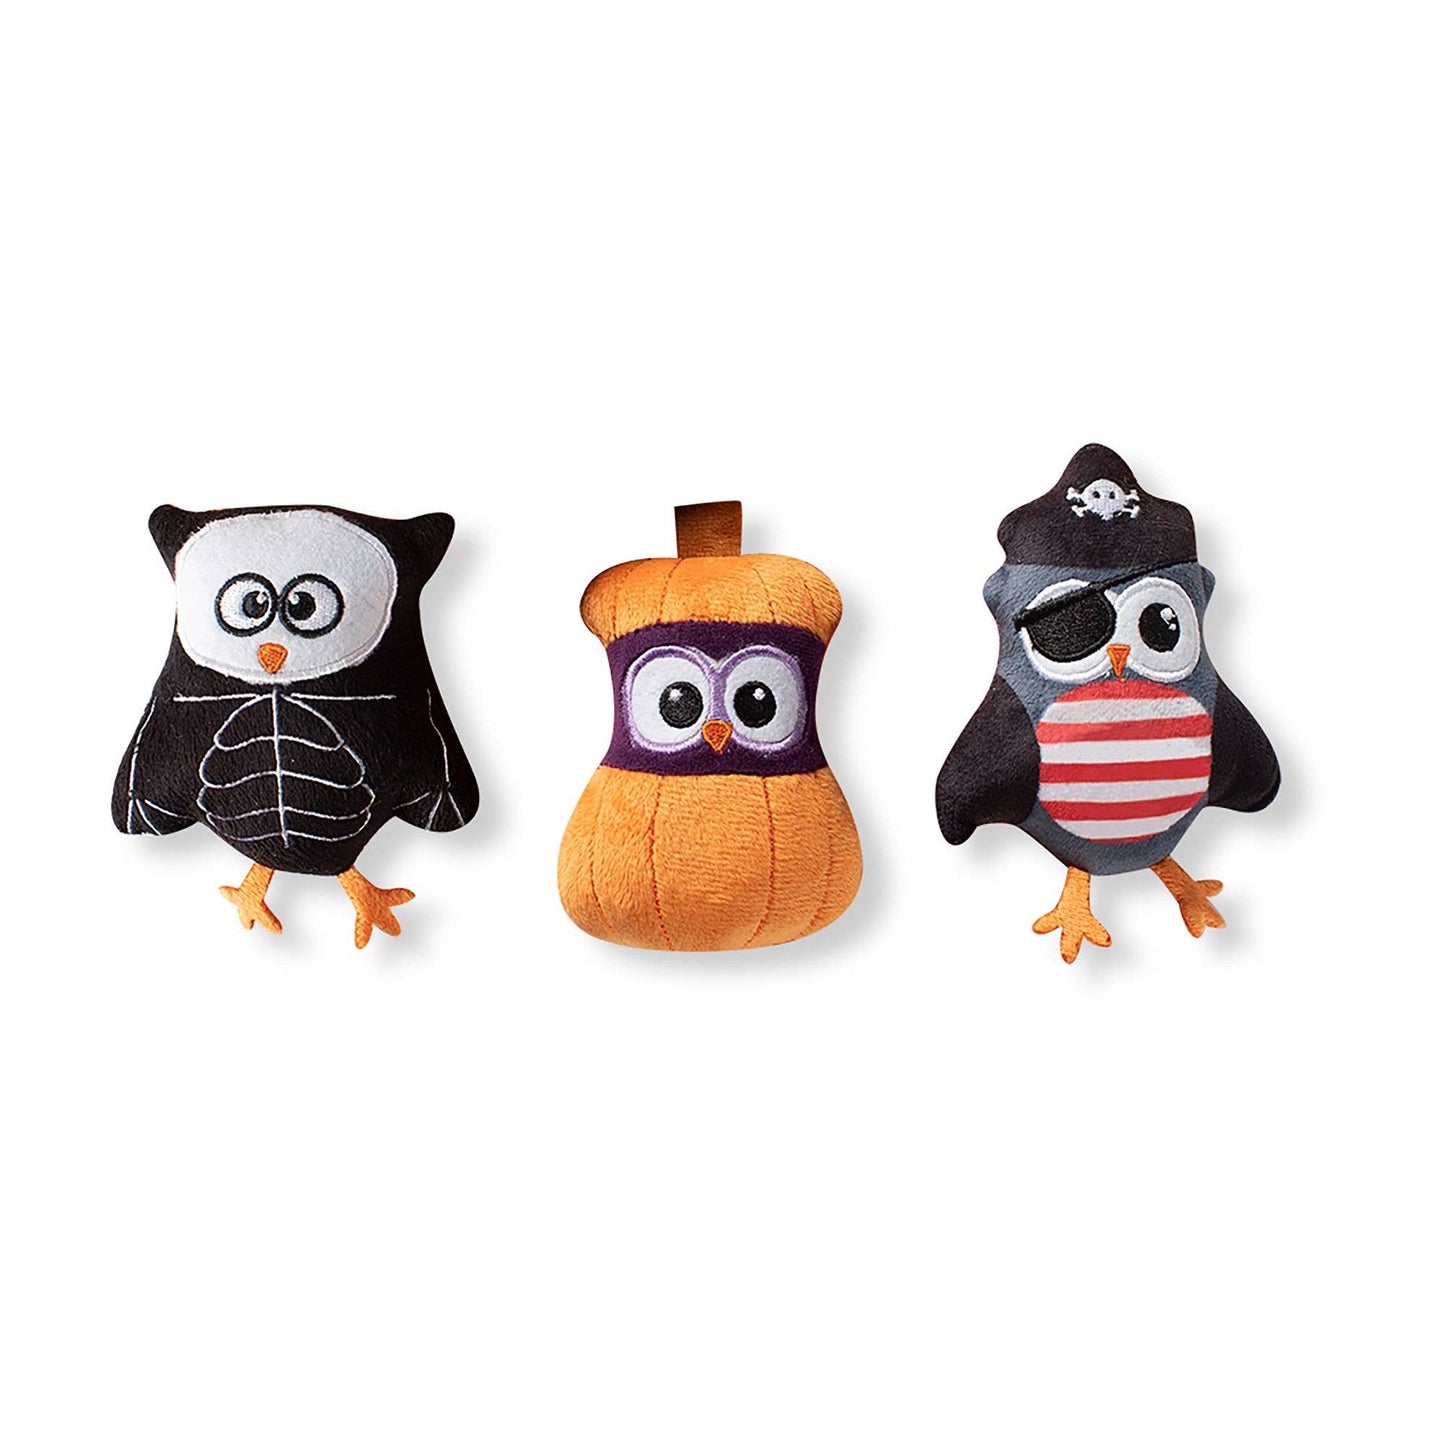 Owl-O-Ween 3 Piece Plush Toys